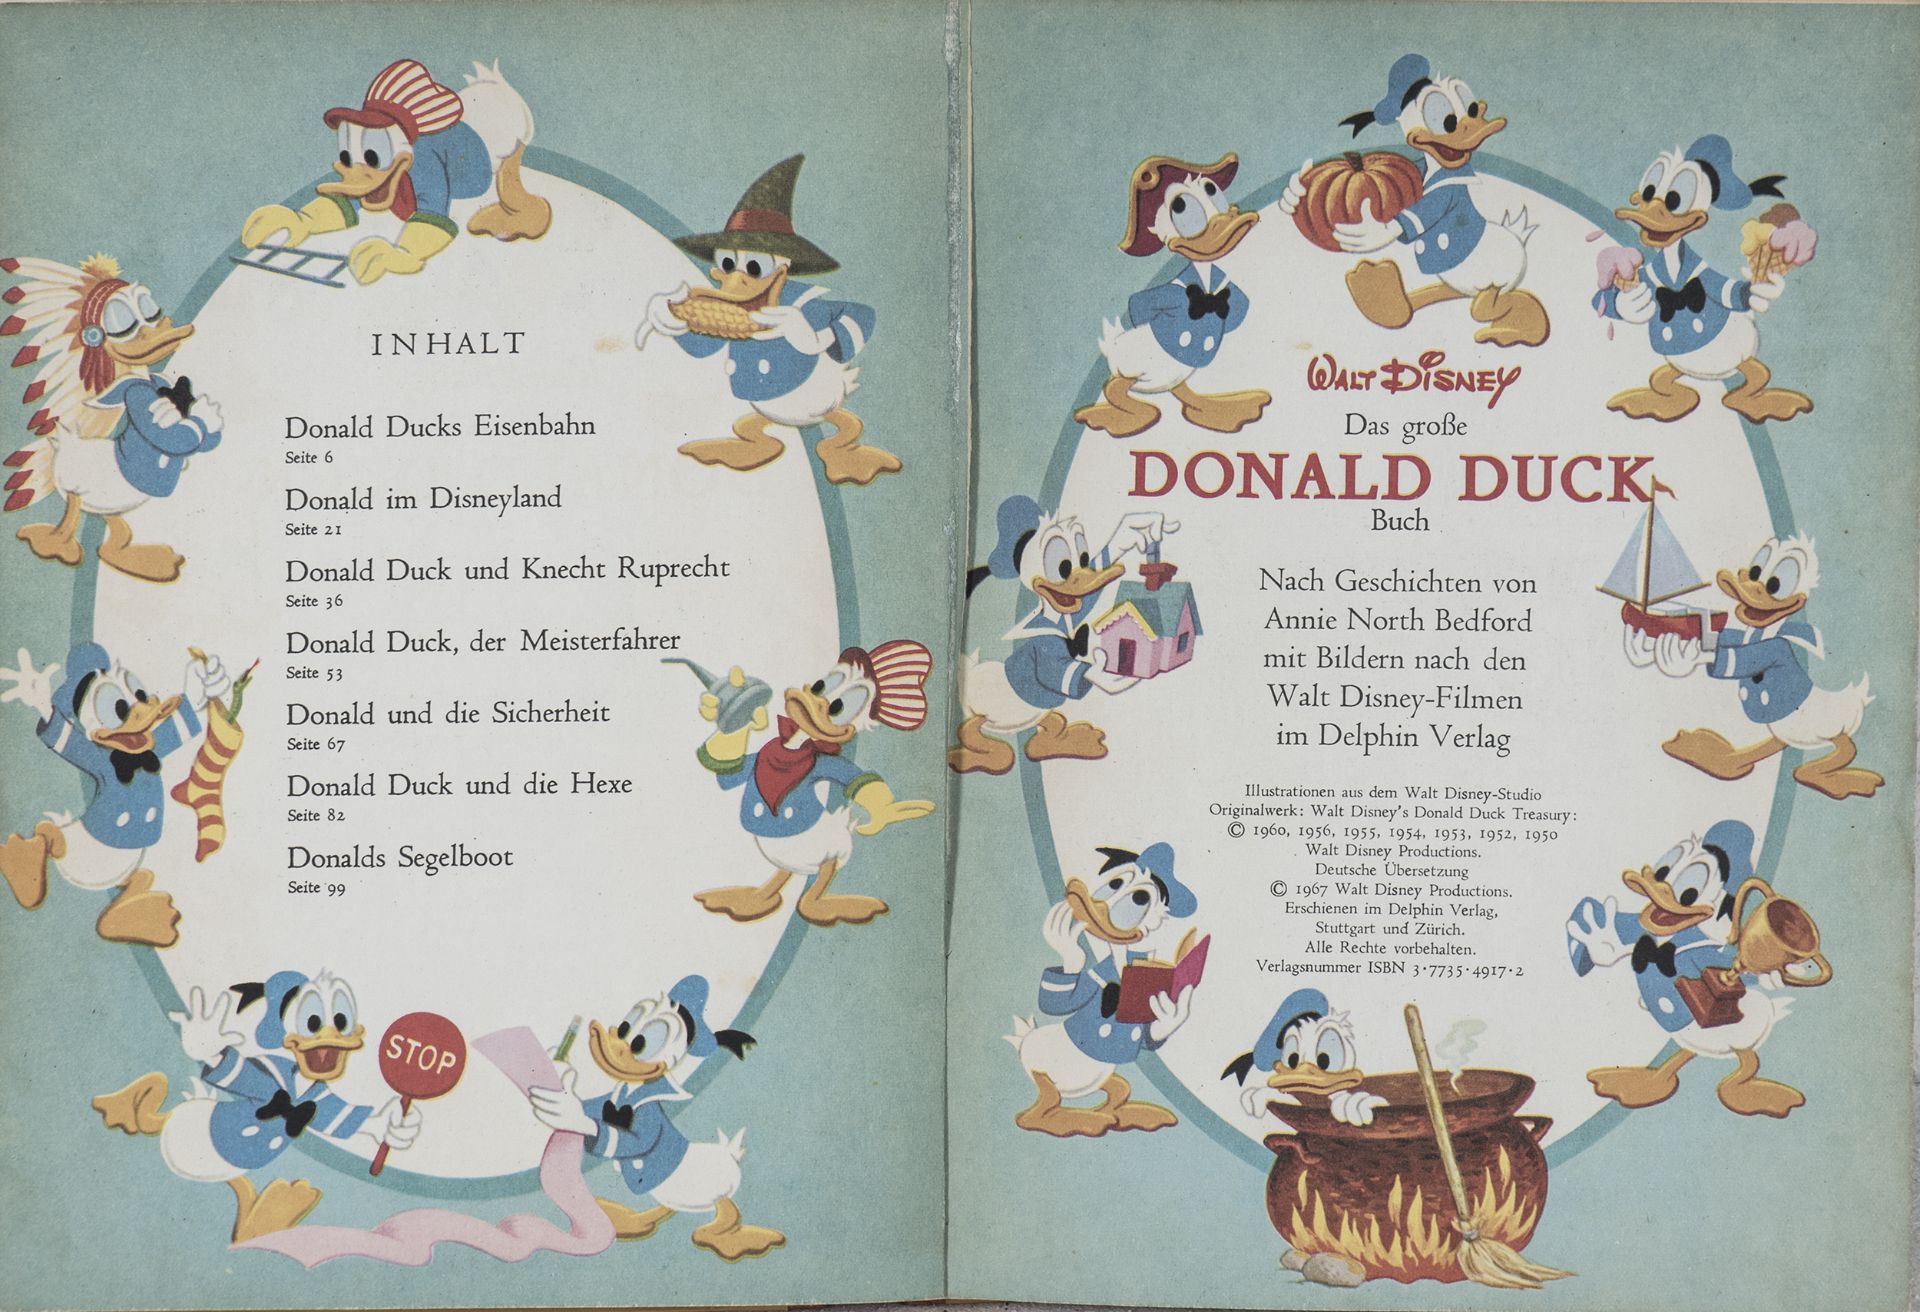 Das Große Donald Duck - Buch, etwas beschädigt. - Bild 2 aus 2